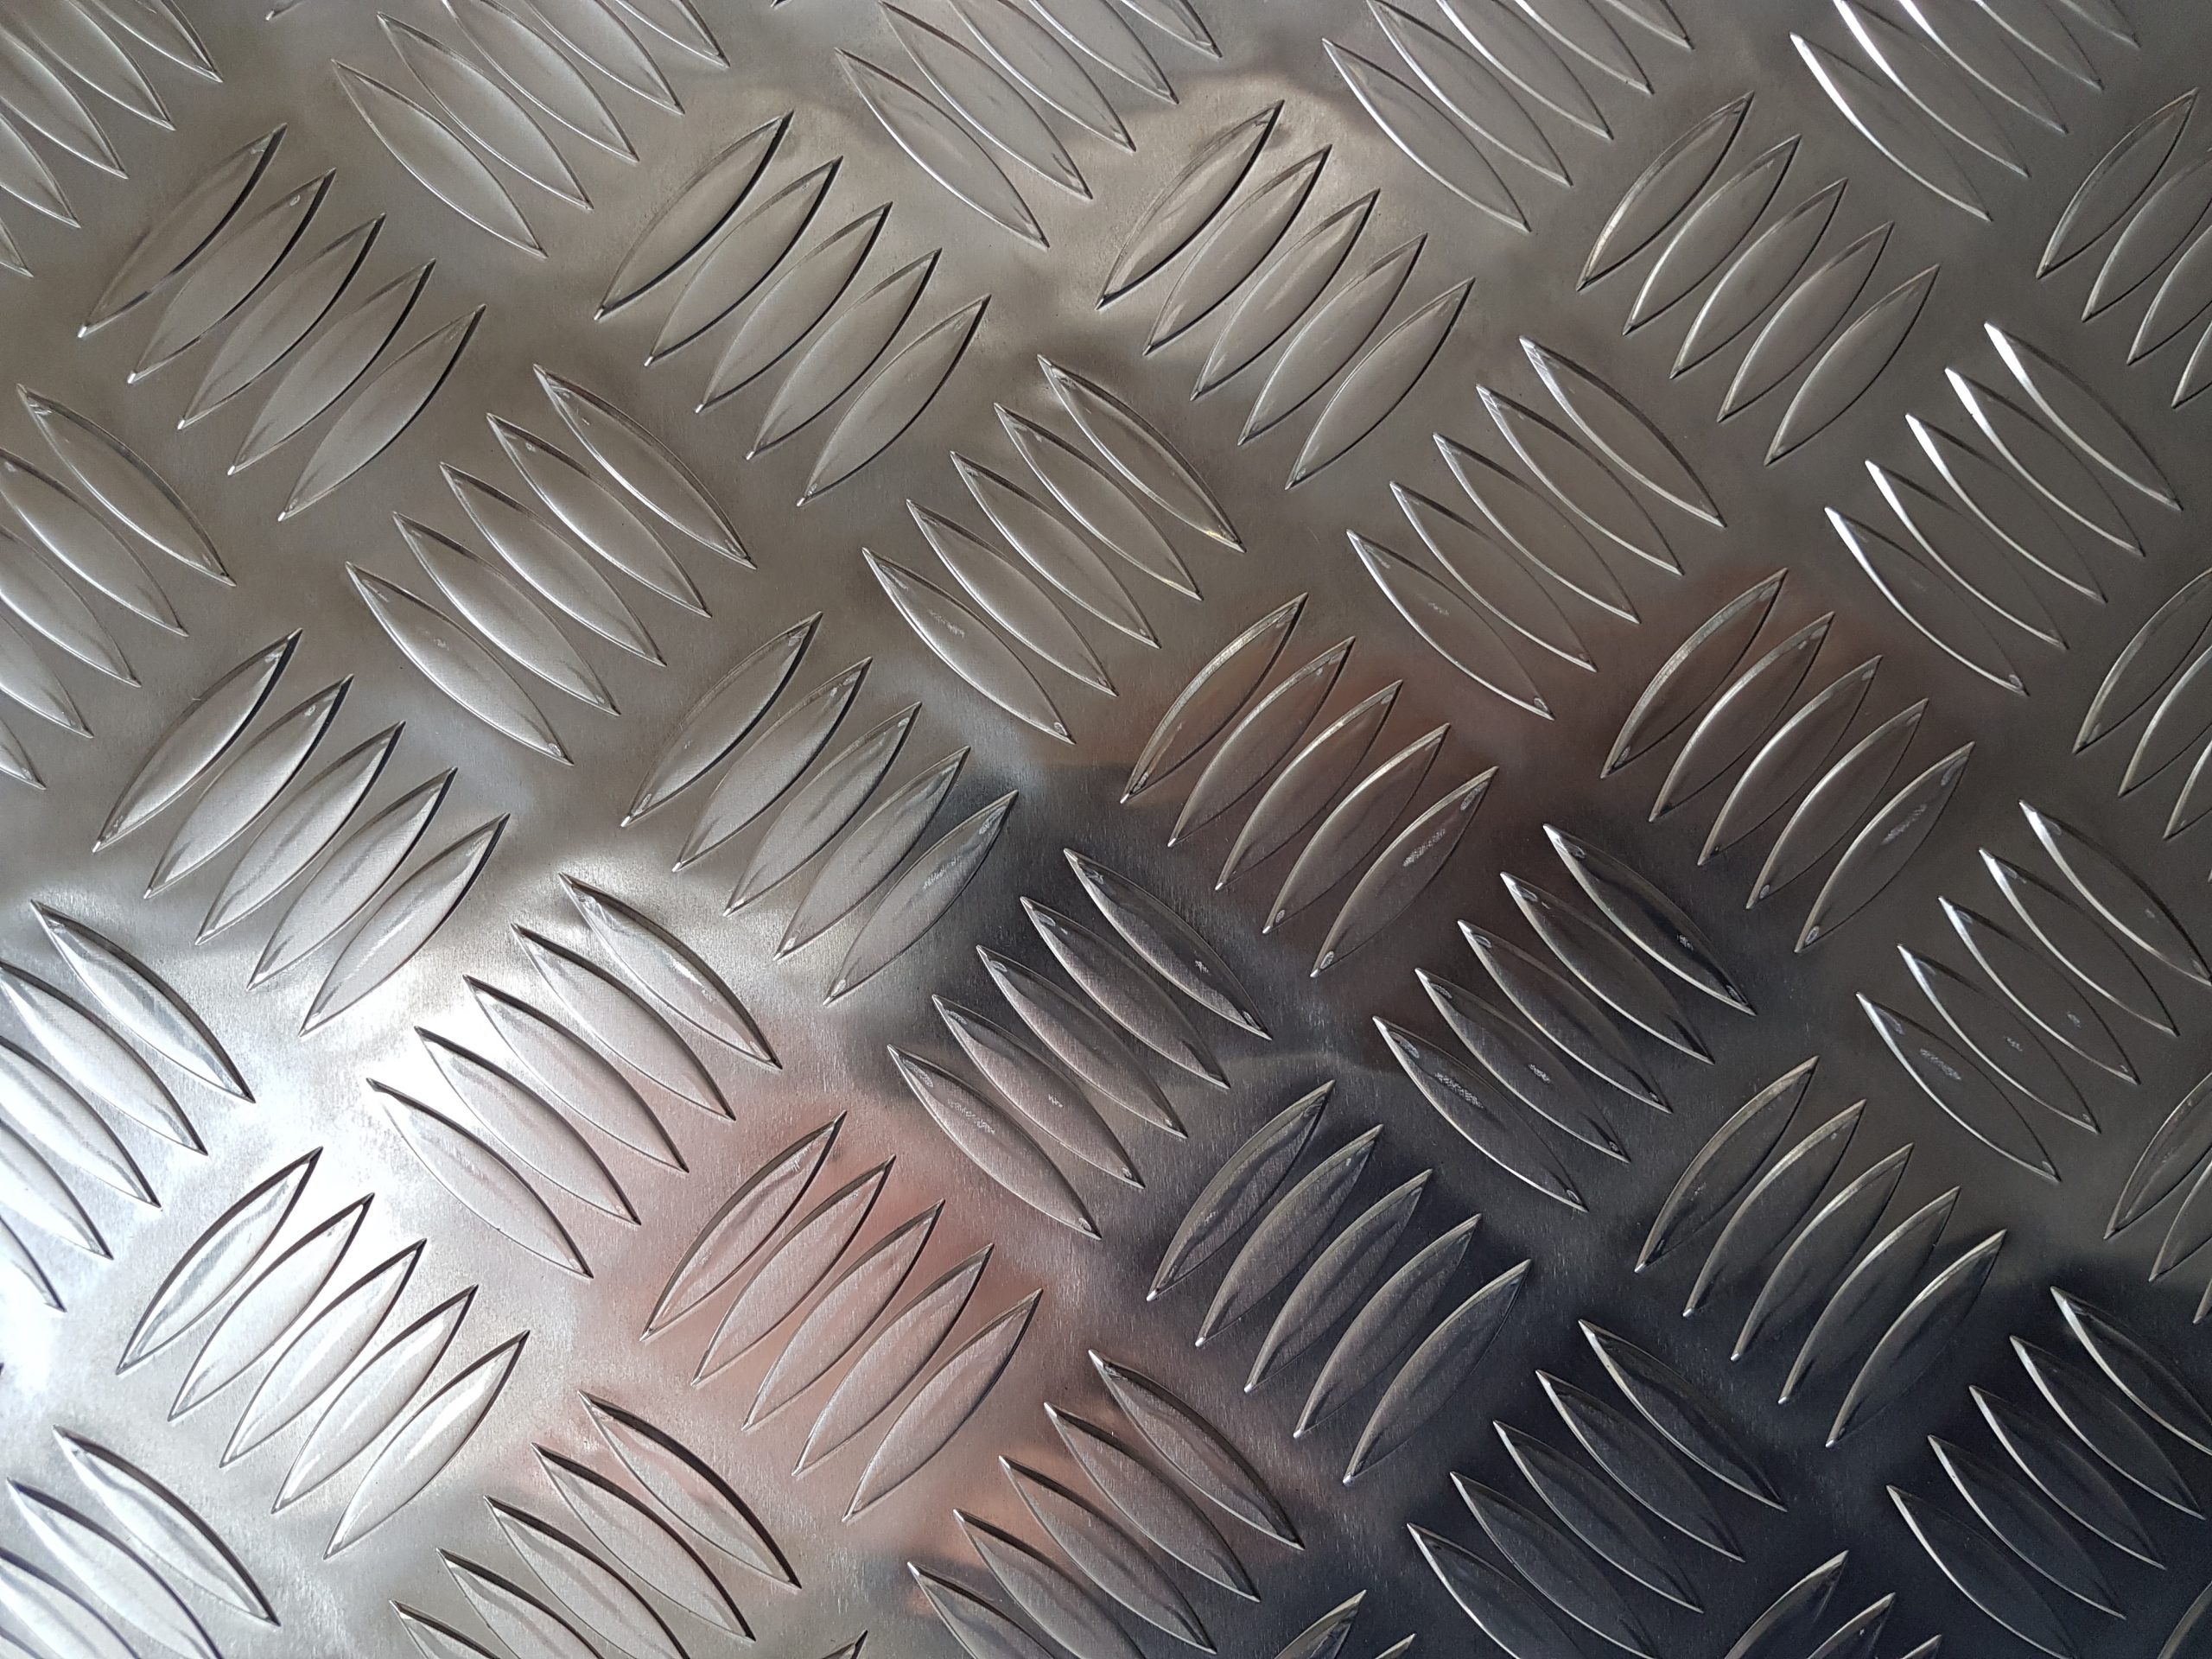 Aluminium CHEQUER PLATE OFFCUTS Durbar 1.5 Kg's 5 Bar Tread Metal Sheet Off Cuts 